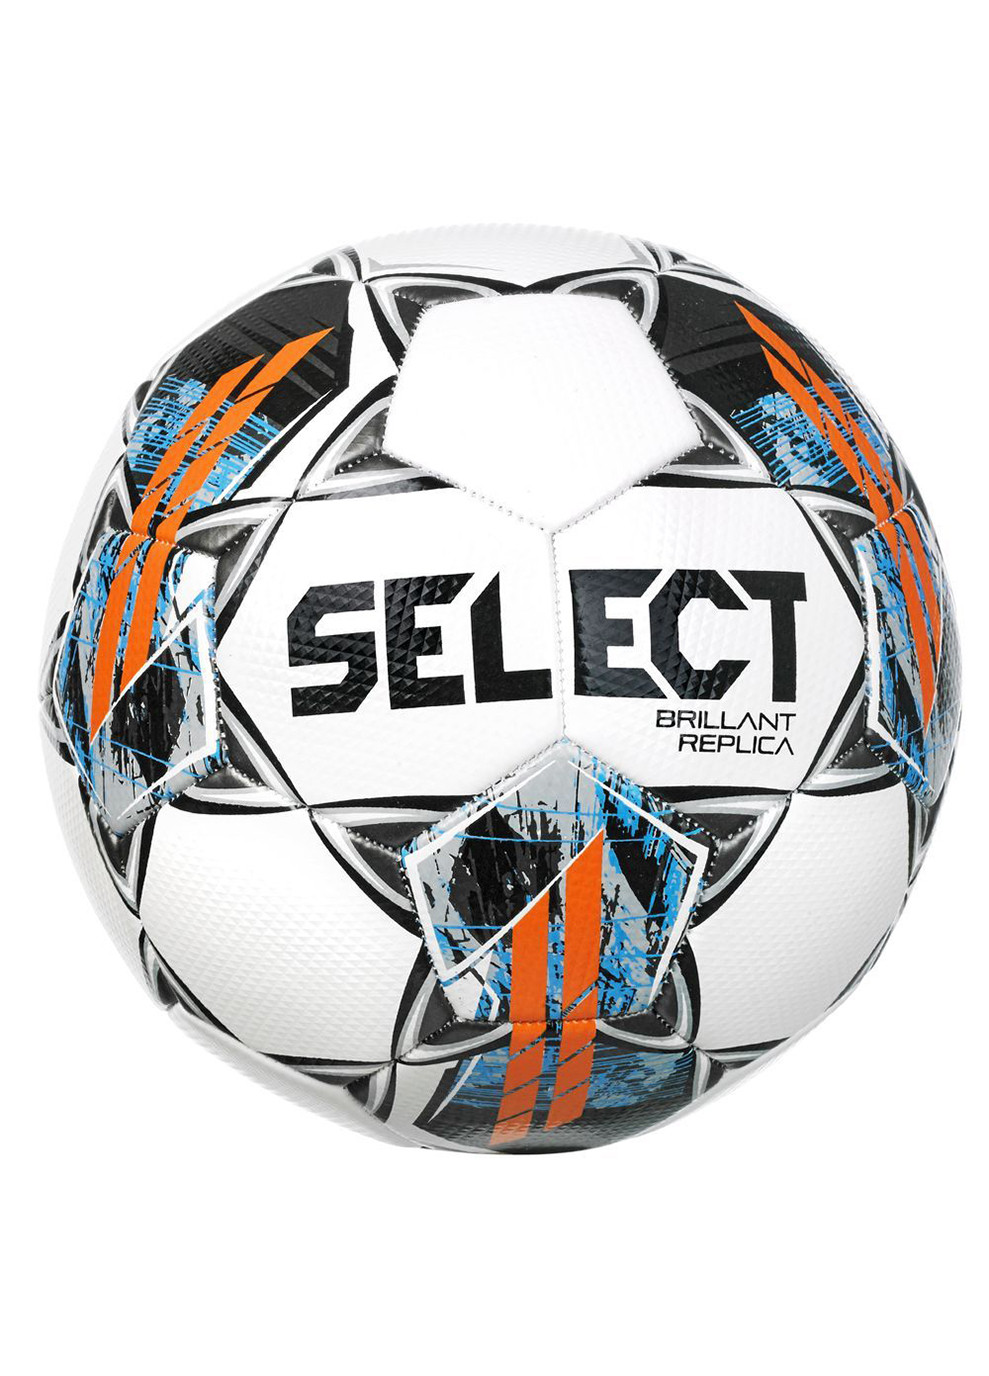 М'яч футбольний Brillant Replica v22 білий/сірий Уни 5 (099486-878-5) Select (254315396)